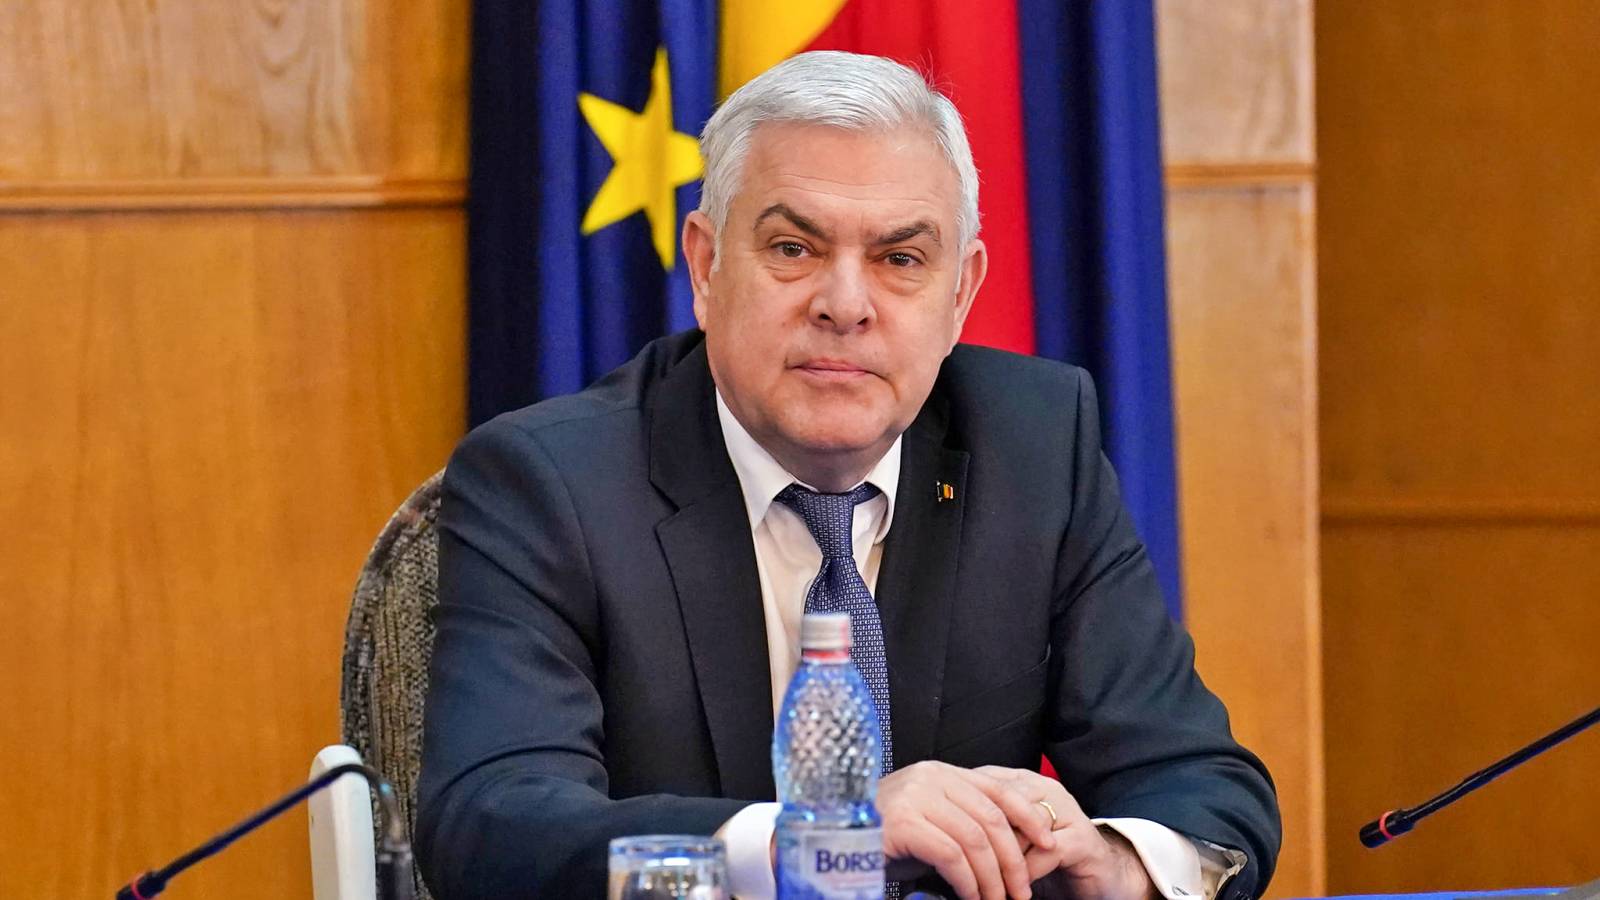 De minister van Defensie kondigt een reeks BELANGRIJKE verzoeken aan Roemeens leger NAVO-VS